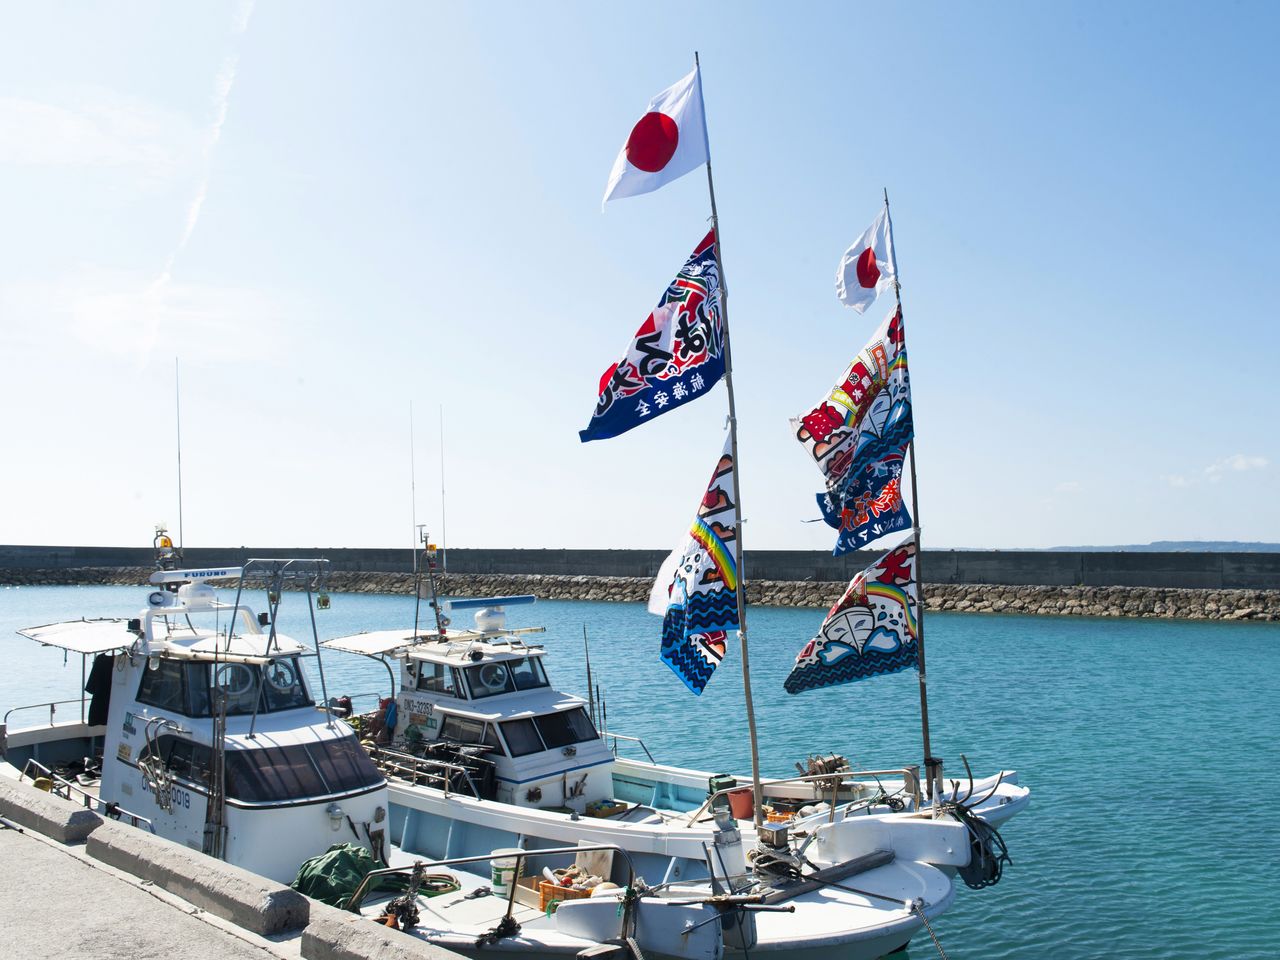 停泊在渔港的船只上挂着祈求丰收的“大渔旗”